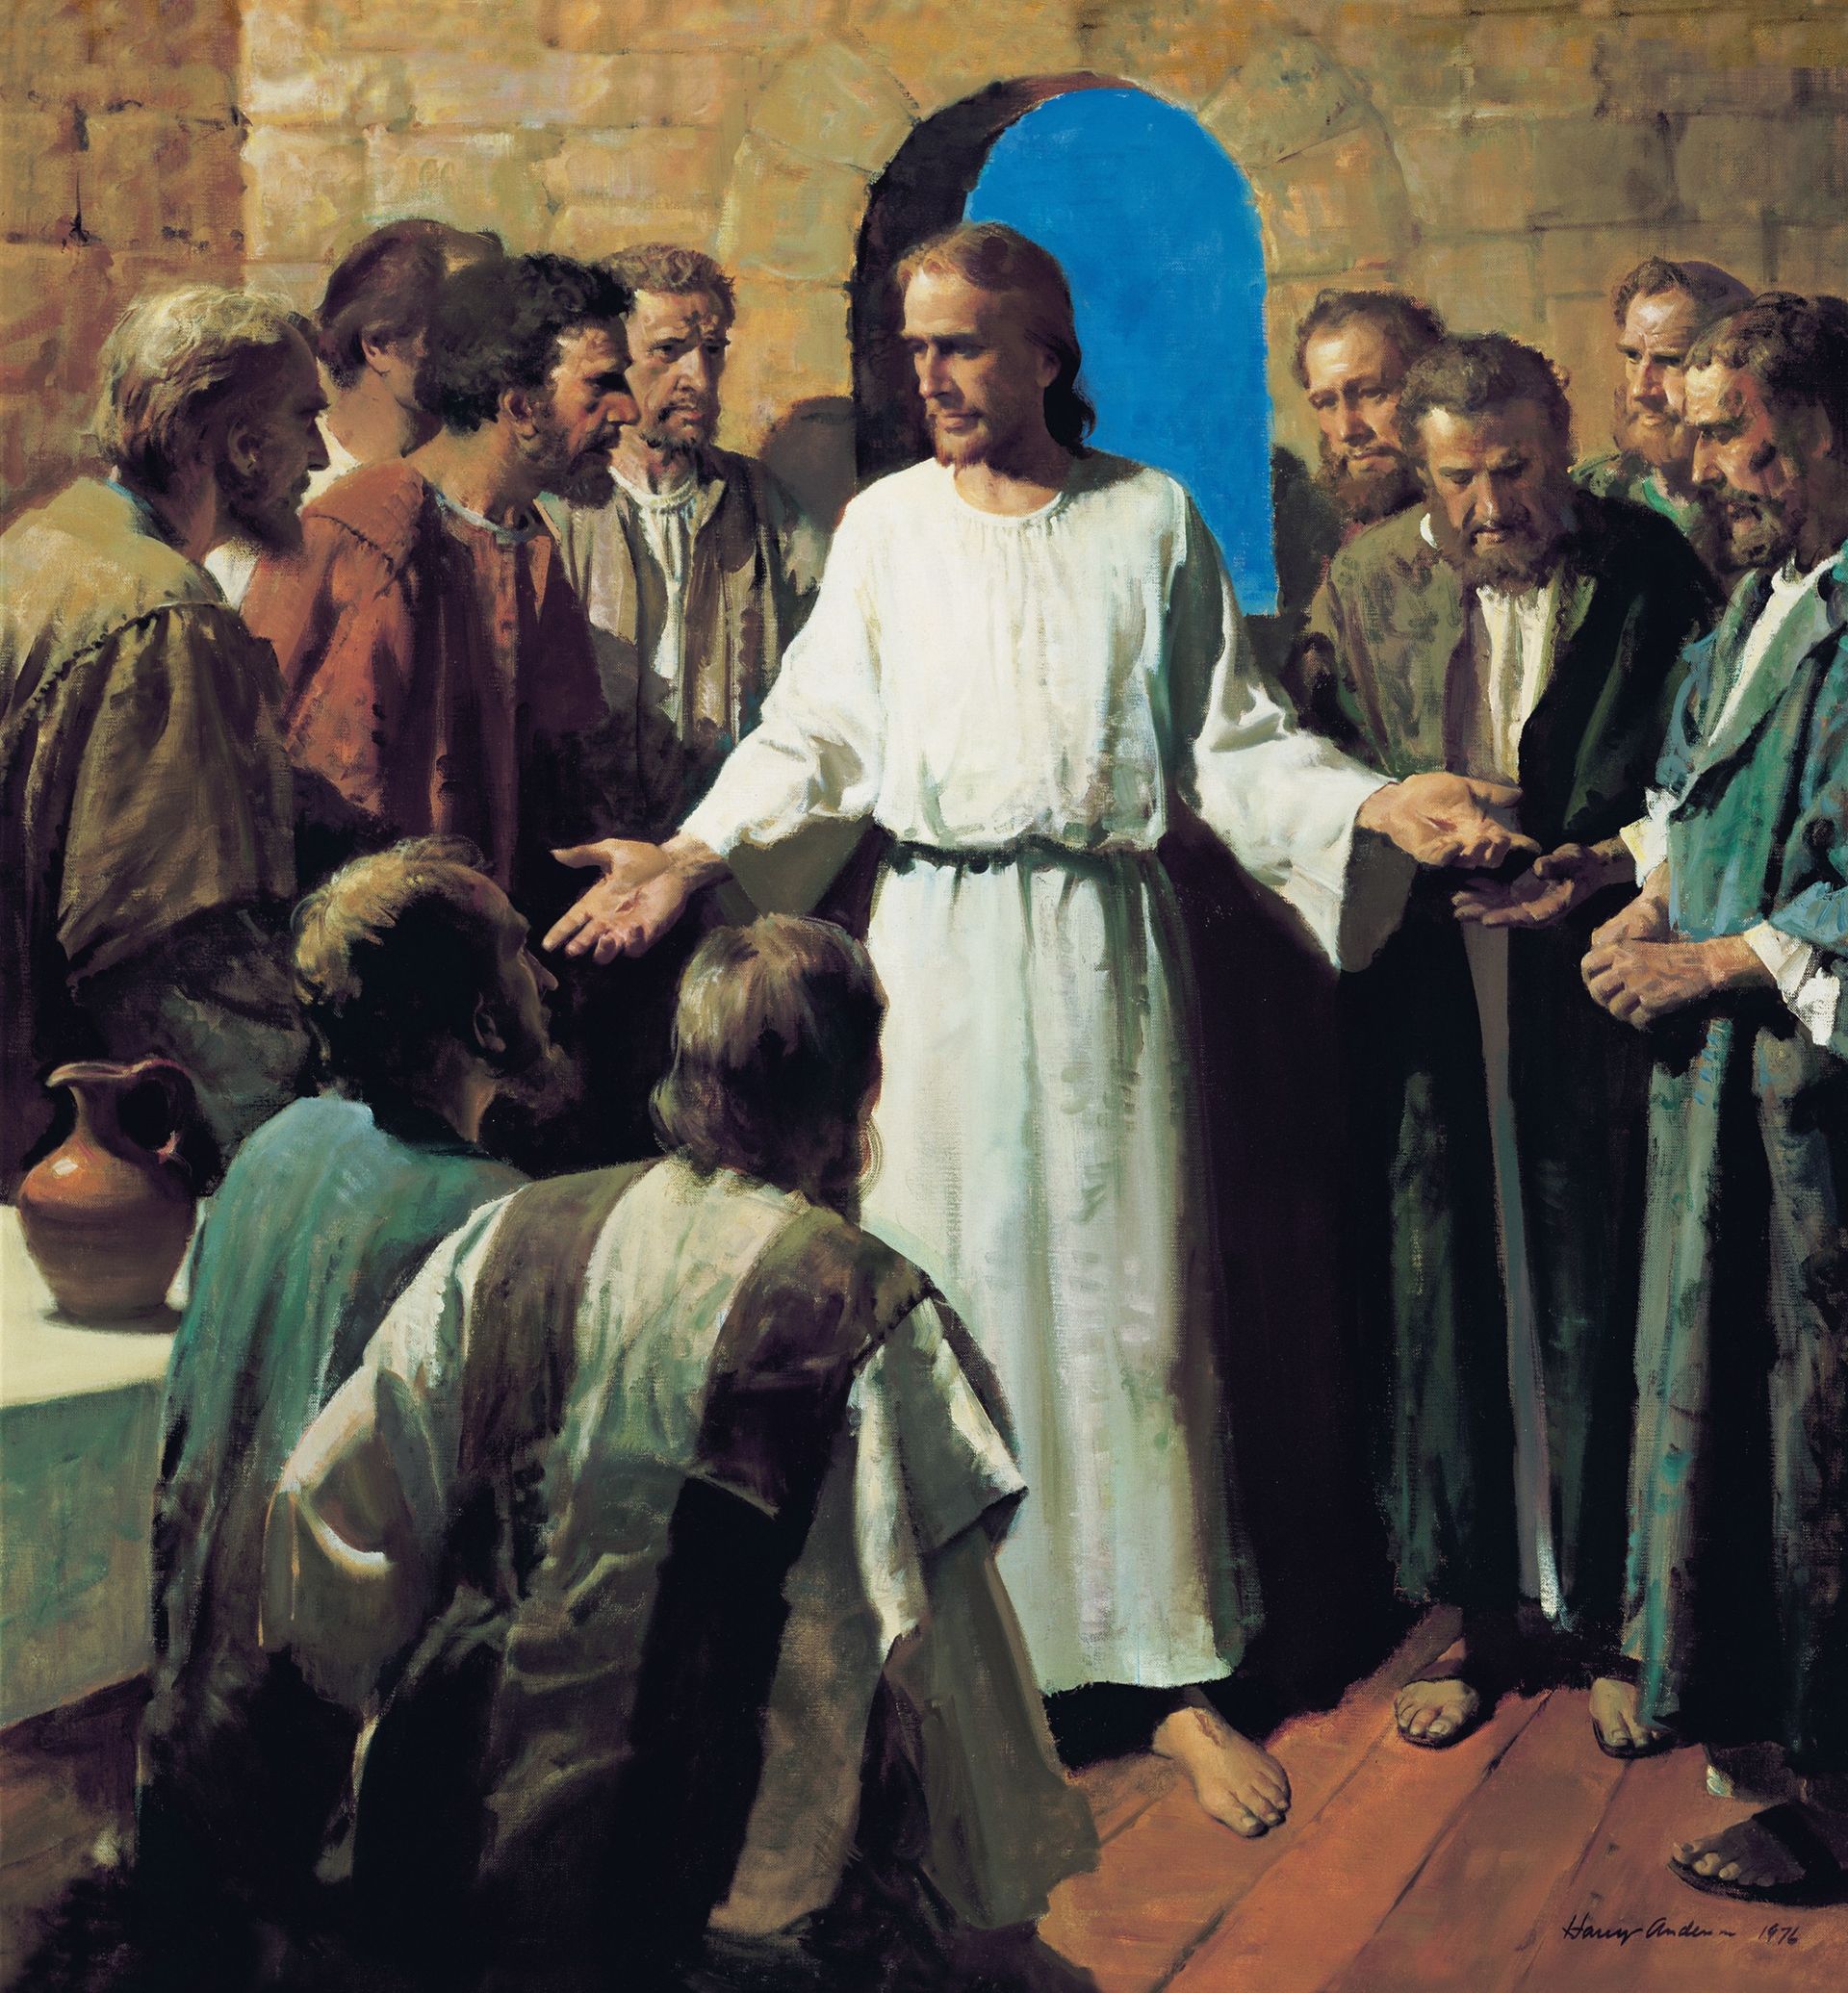 Jesus visar sina sår (Se på mina händer och mina fötter)